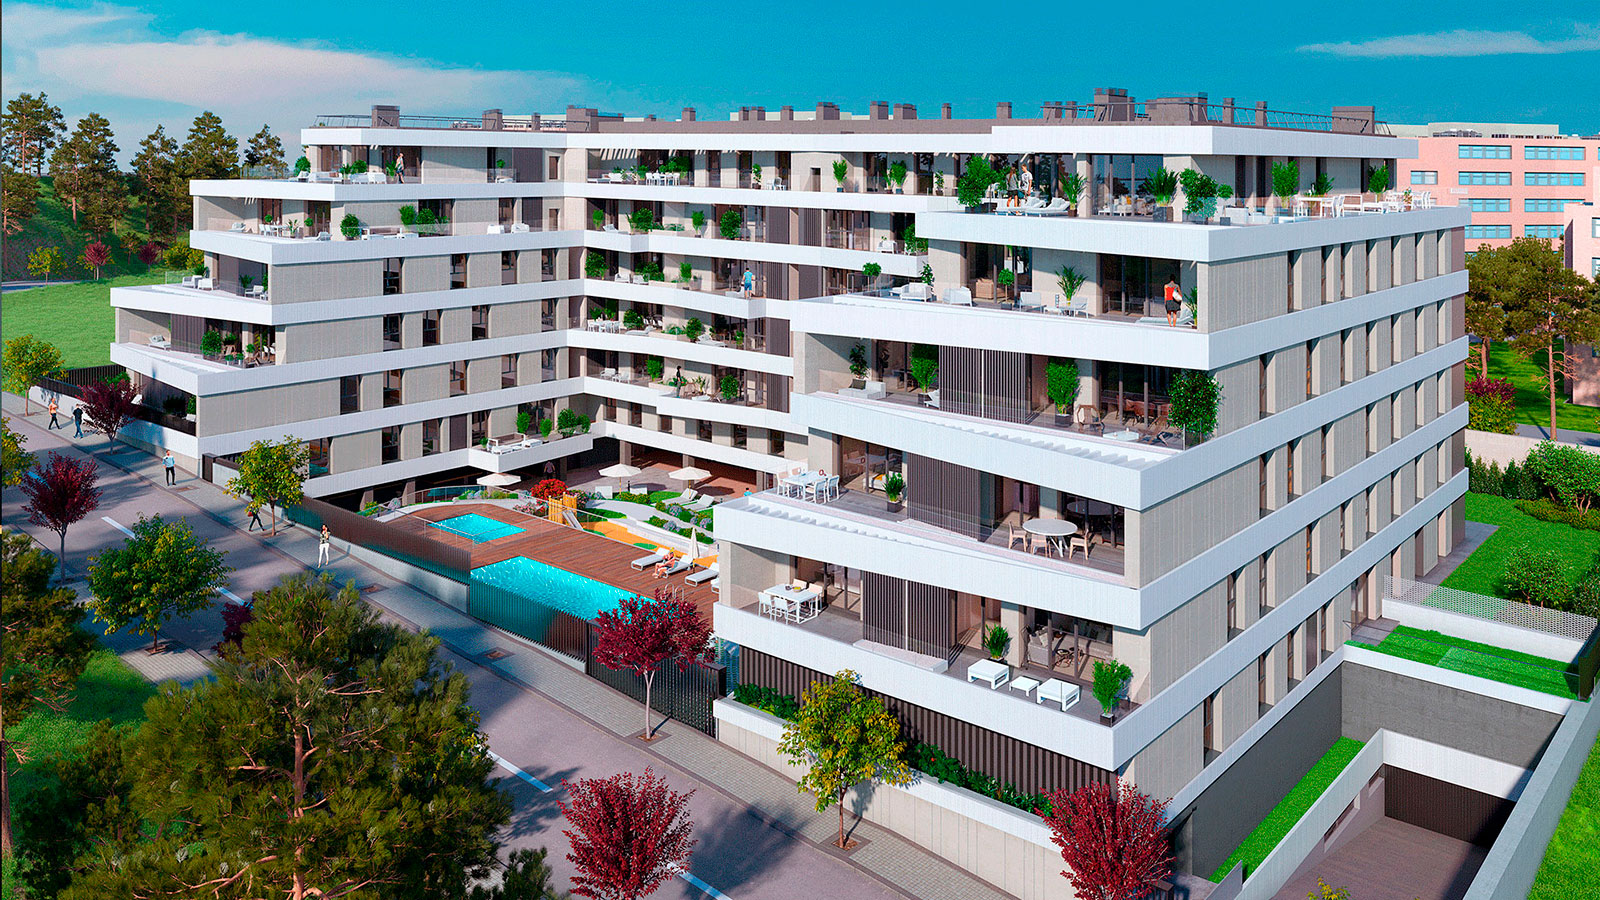 De diseño y eficientes: así son las nuevas casas que llegan a Madrid